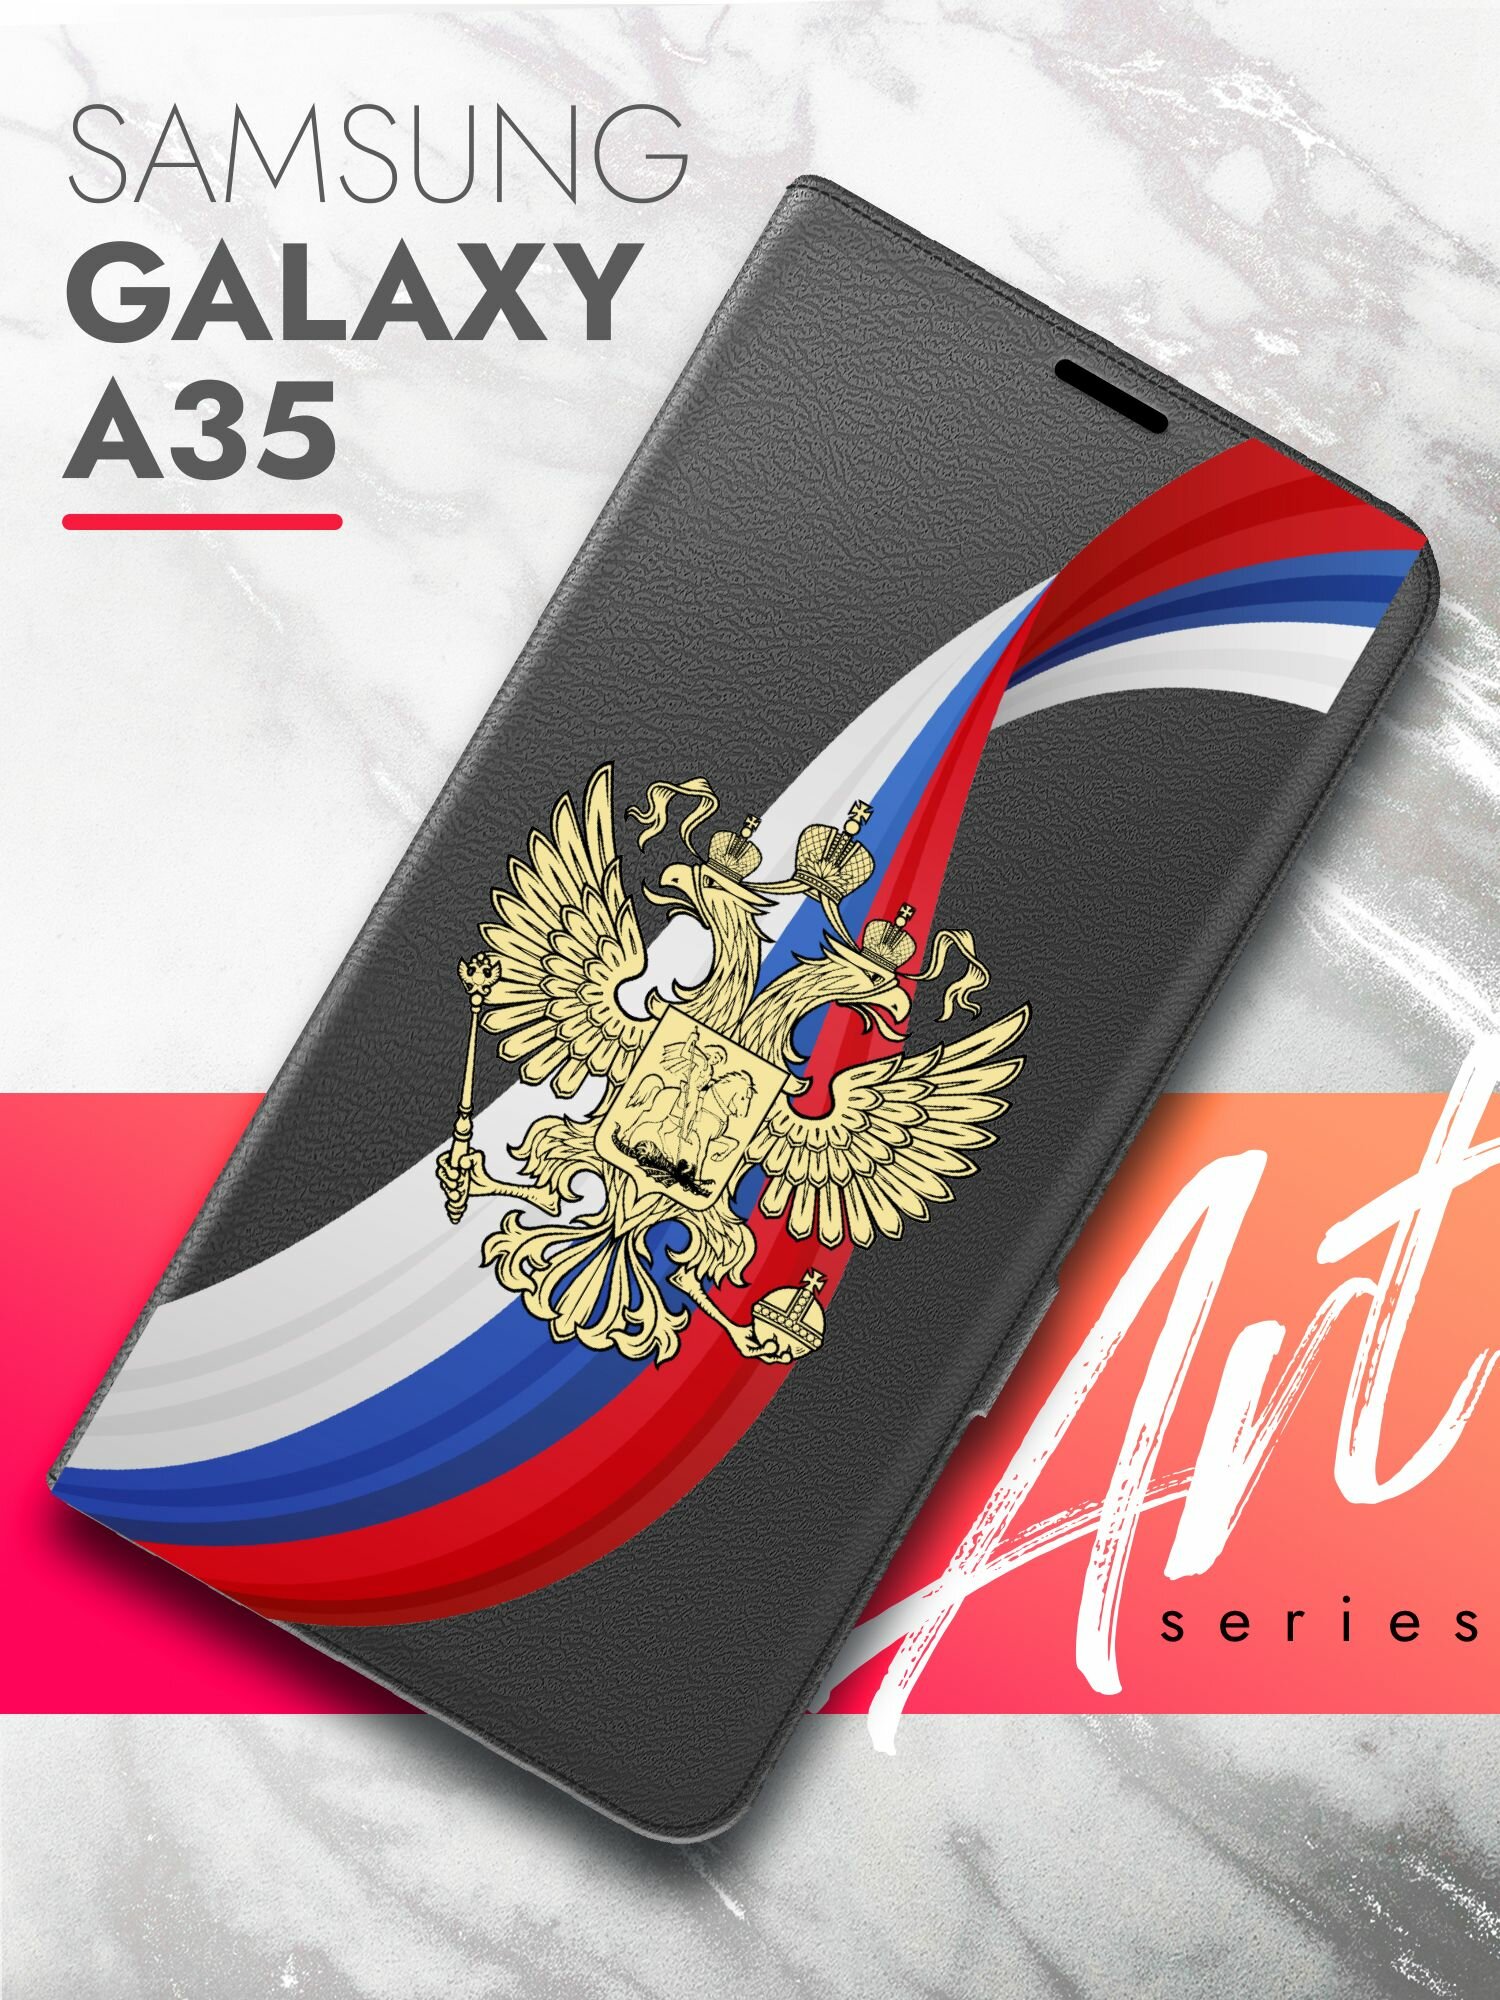 Чехол на Samsung Galaxy A35 (Самсунг Галакси А35) черный книжка экокожа подставка отделение для карт магнит Book case, Brozo (принт) Россия Флаг-Лента